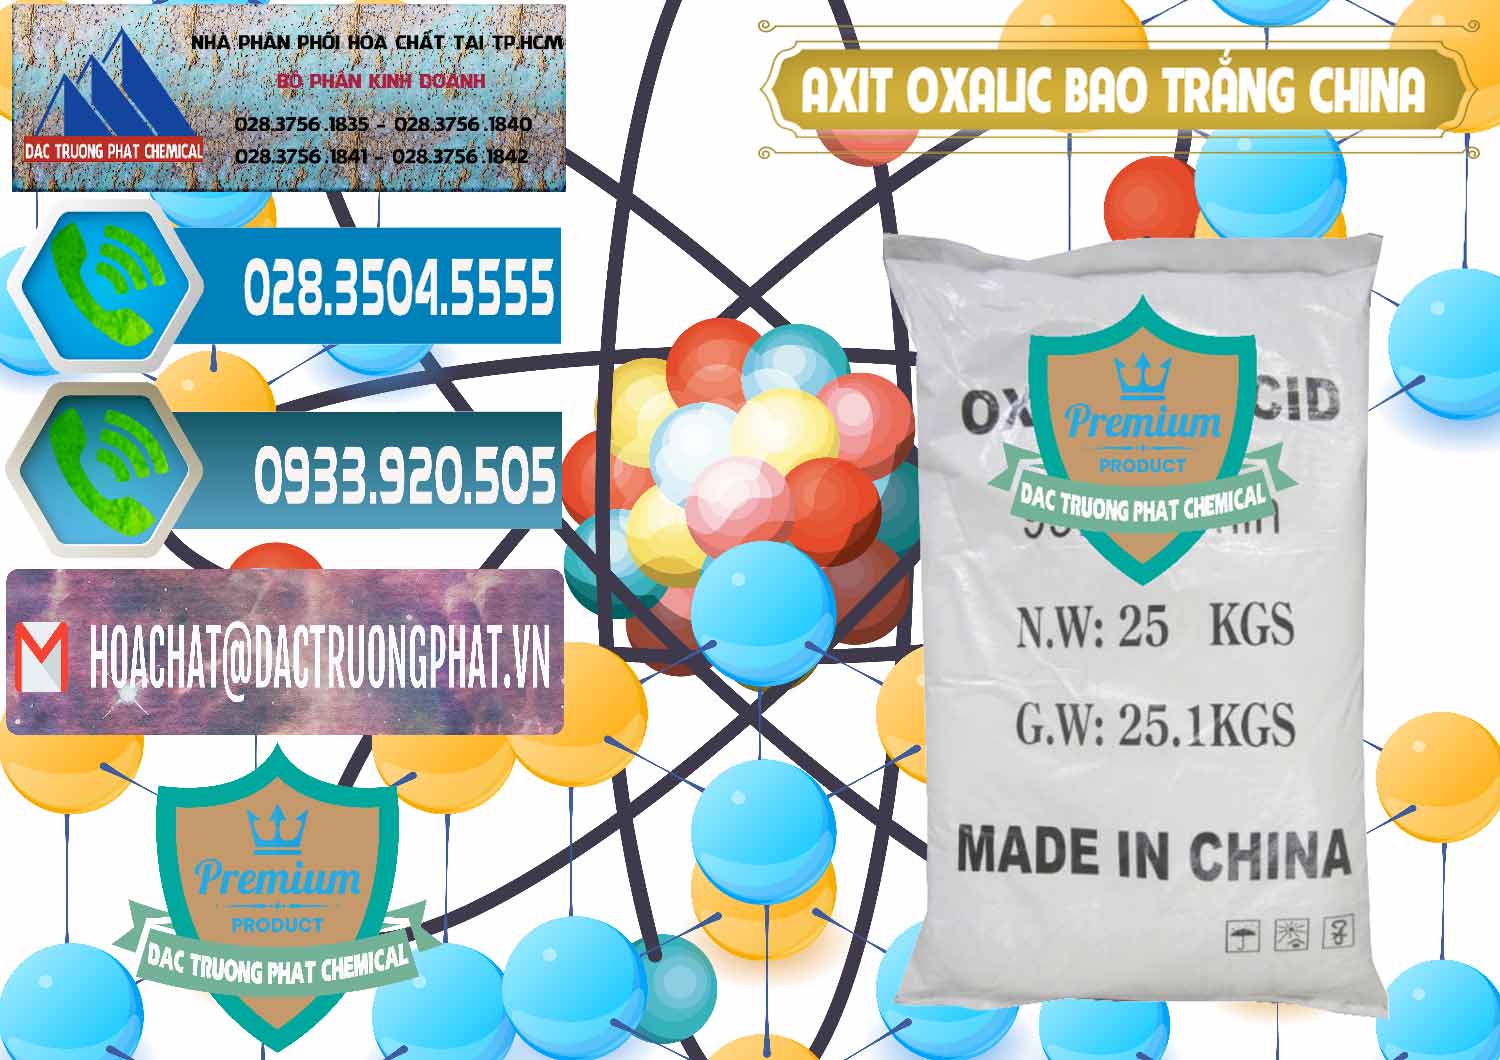 Công ty bán và cung cấp Acid Oxalic – Axit Oxalic 99.6% Bao Trắng Trung Quốc China - 0270 - Nơi chuyên phân phối và cung ứng hóa chất tại TP.HCM - congtyhoachat.net